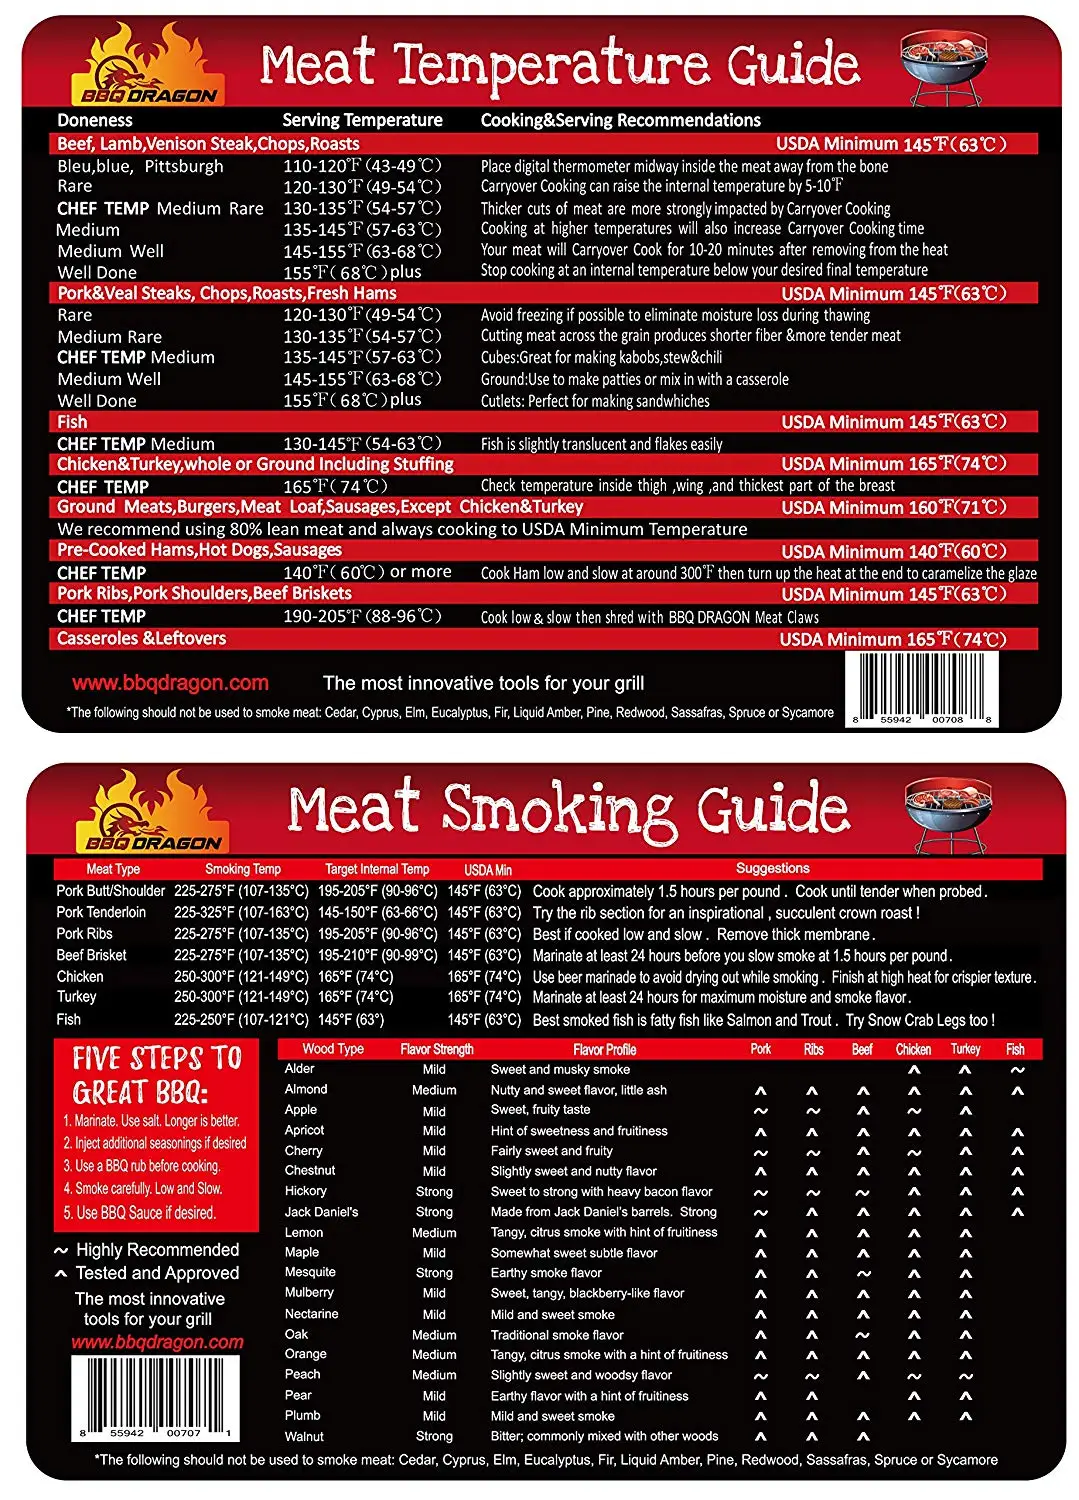 Smoking Wood Chart